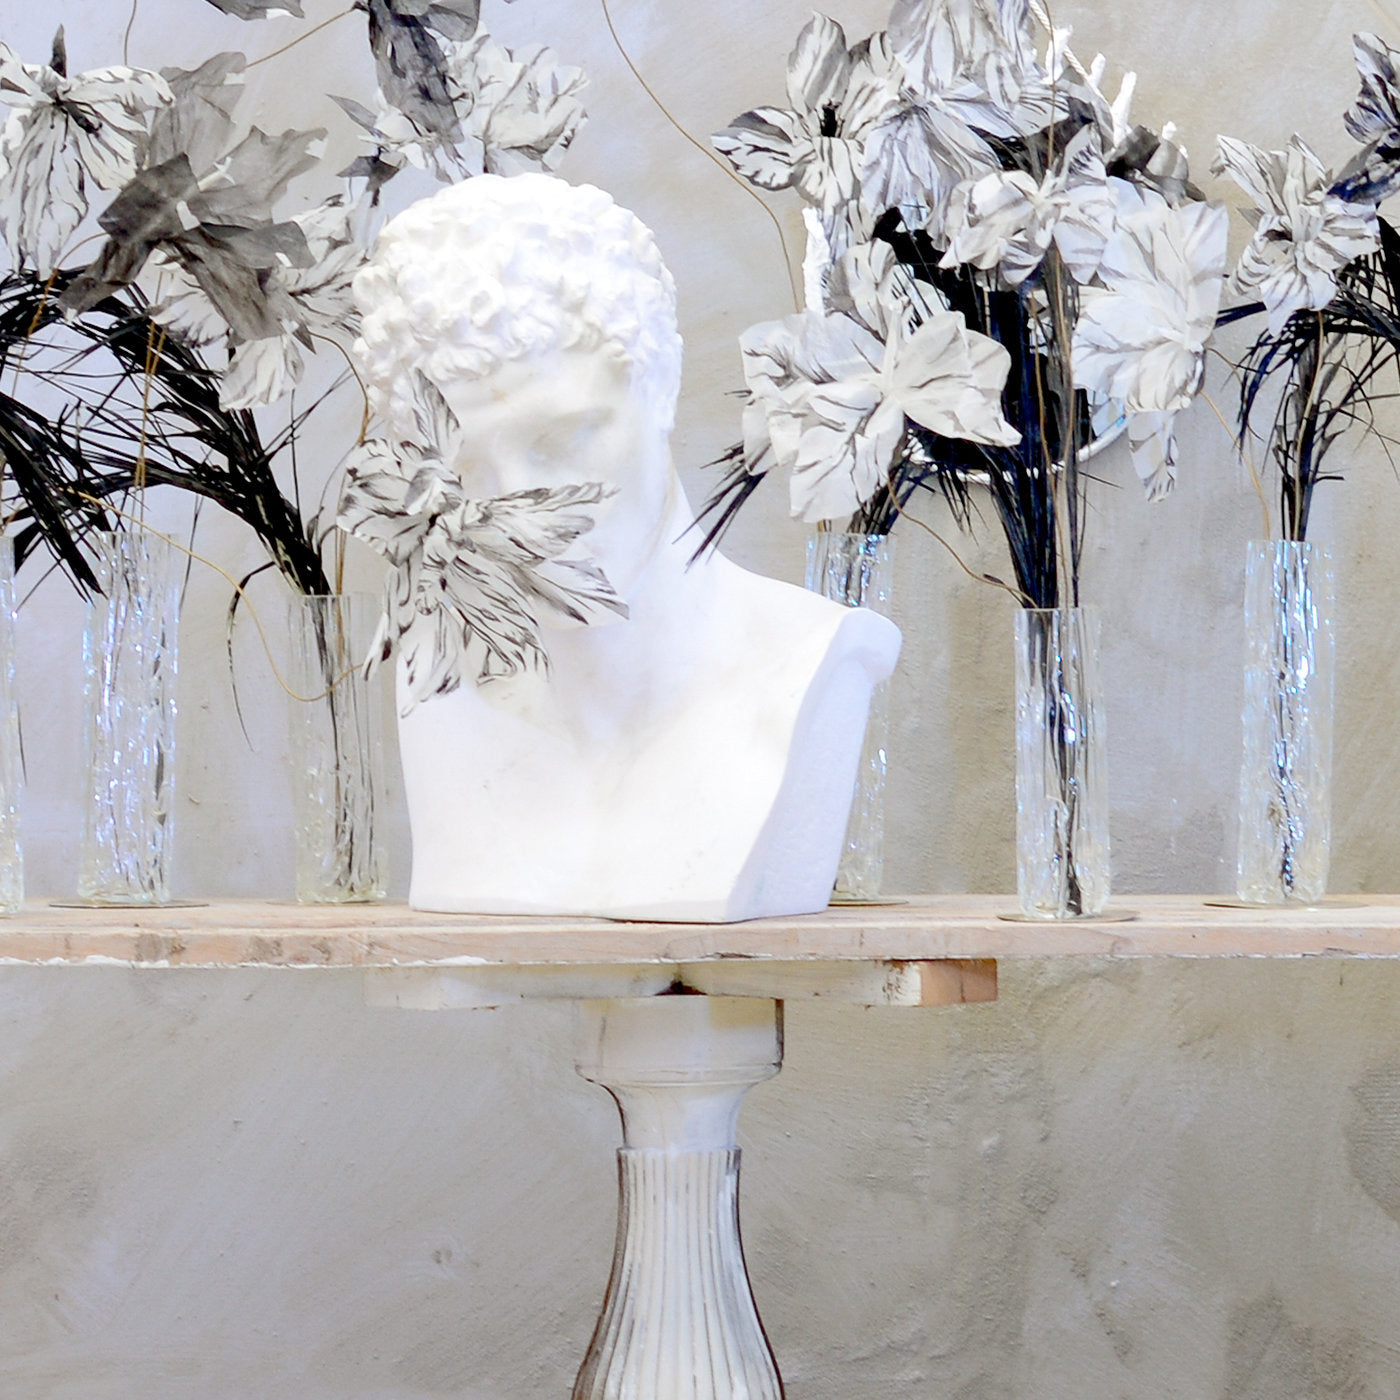 Fleurs De Scène Glass Vase with Silk Flowers #3 - Alternative view 1